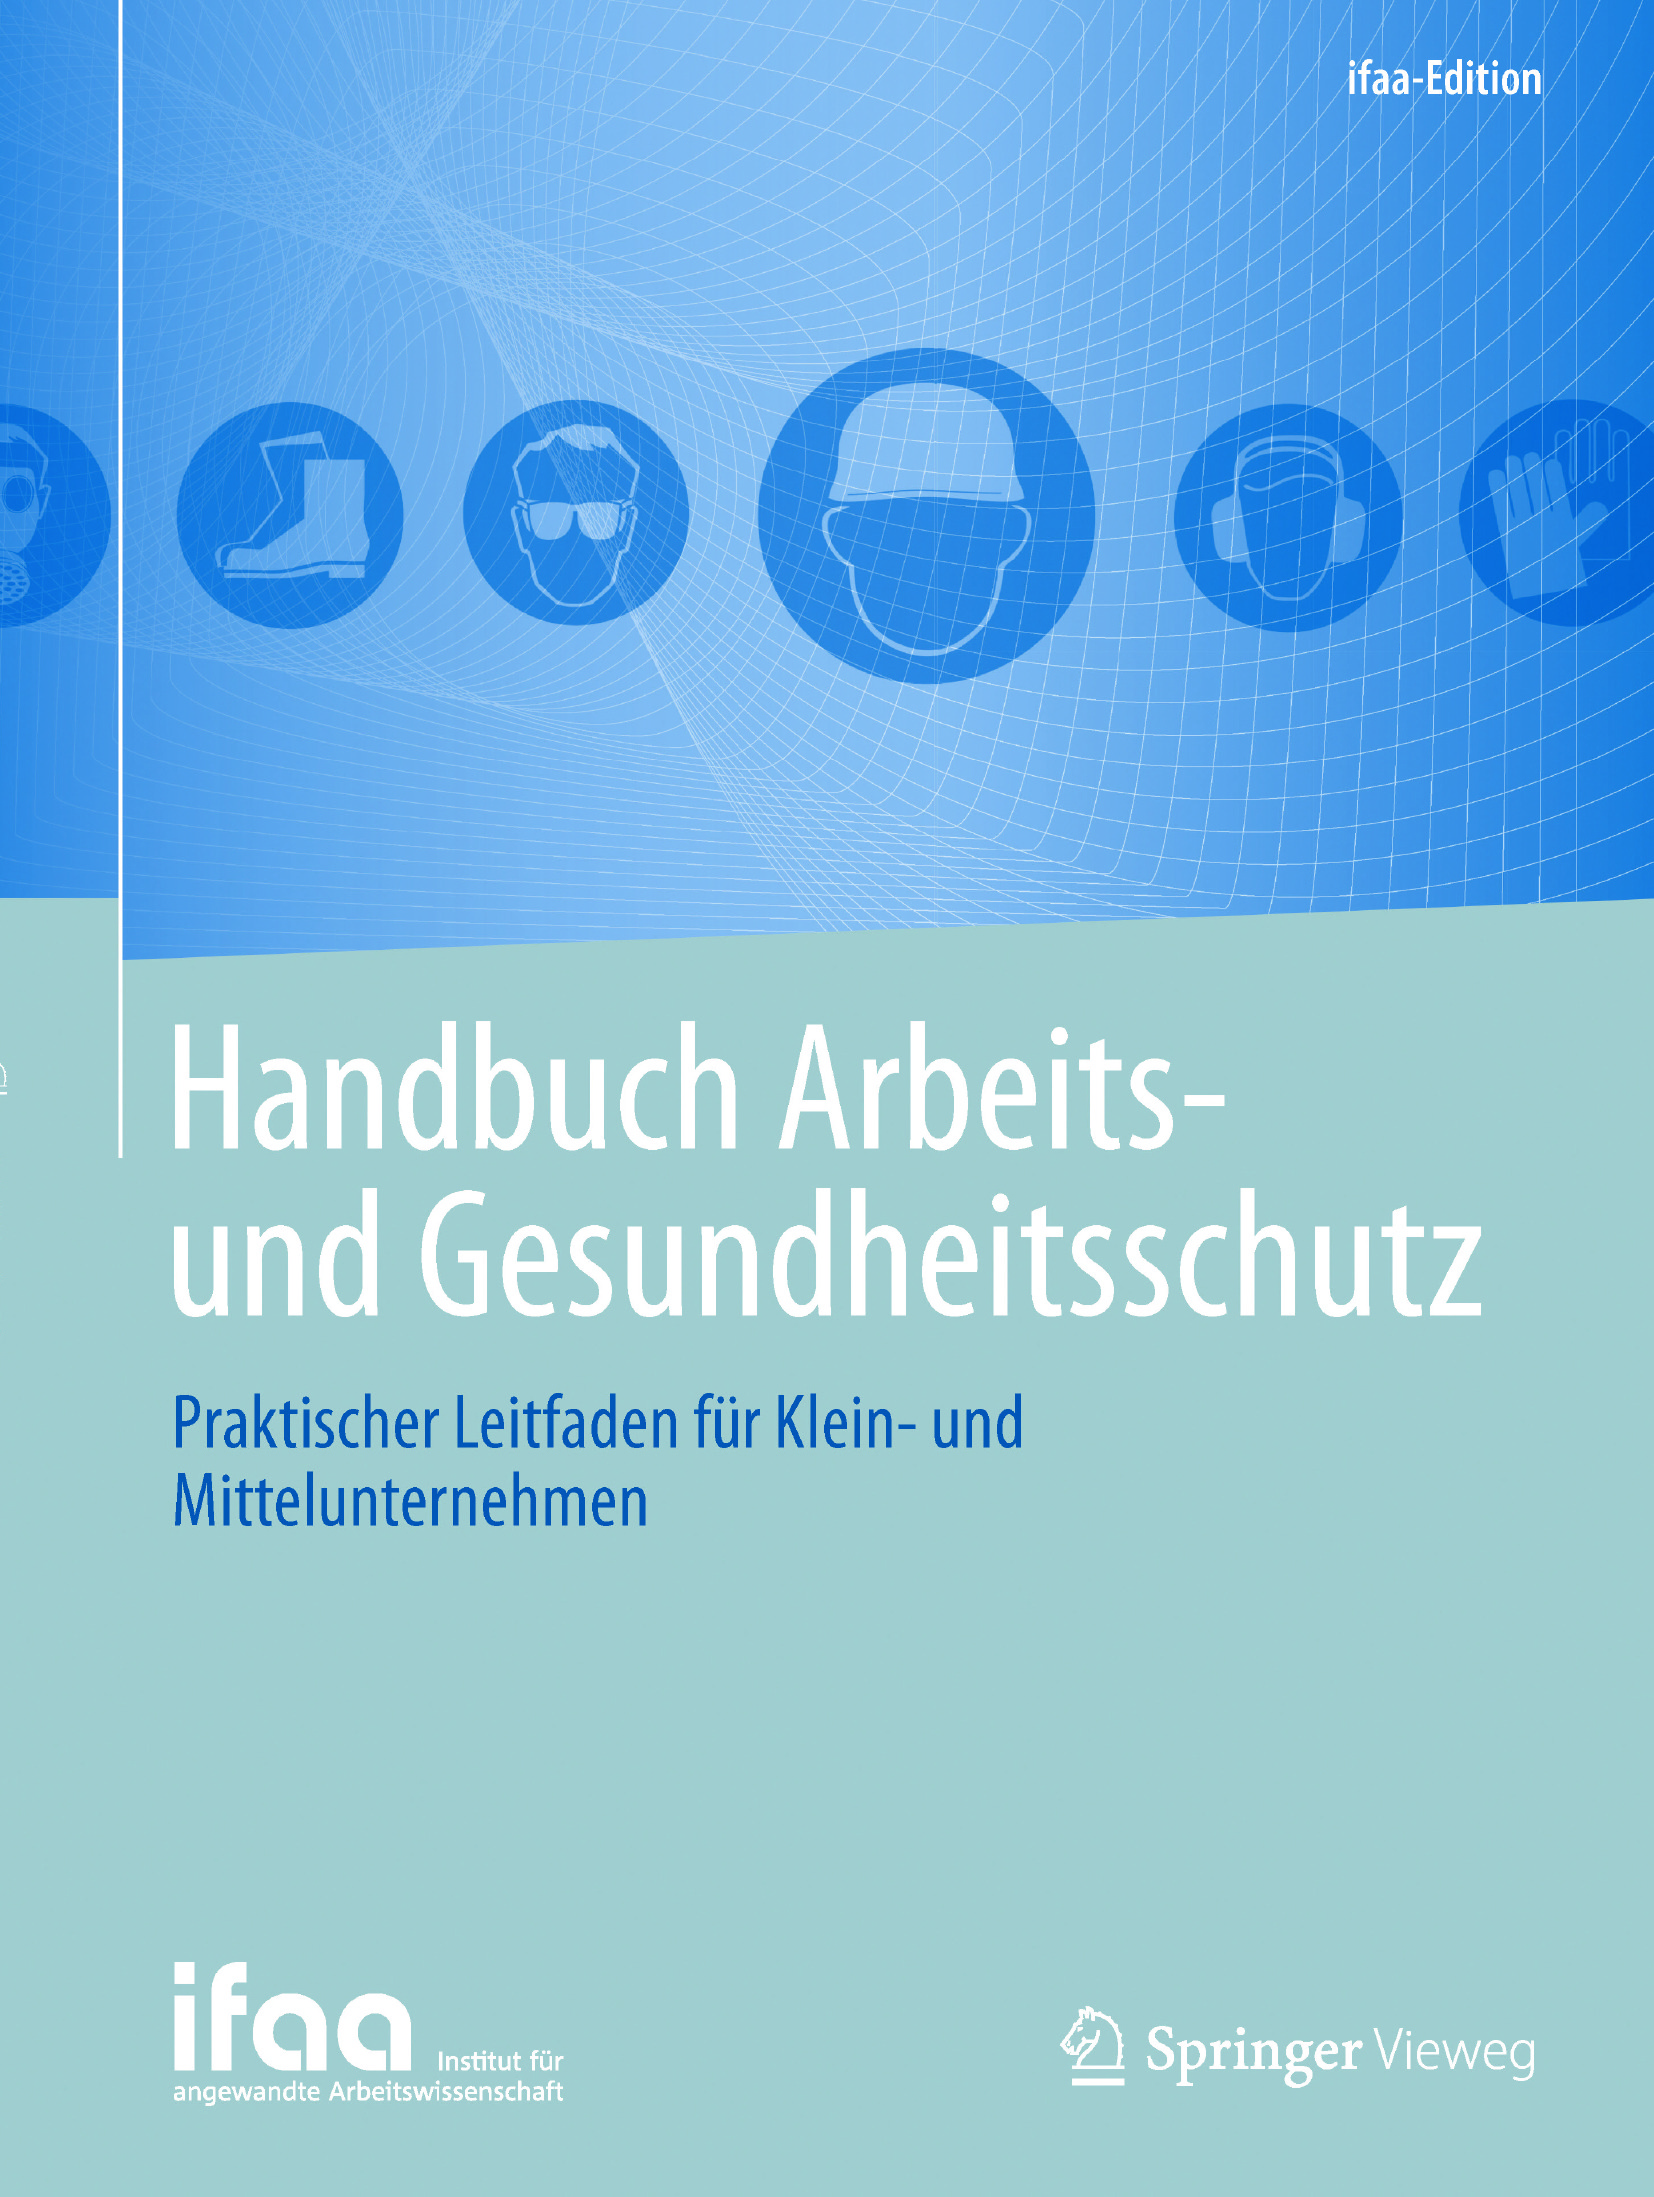  - Handbuch Arbeits- und Gesundheitsschutz, ebook